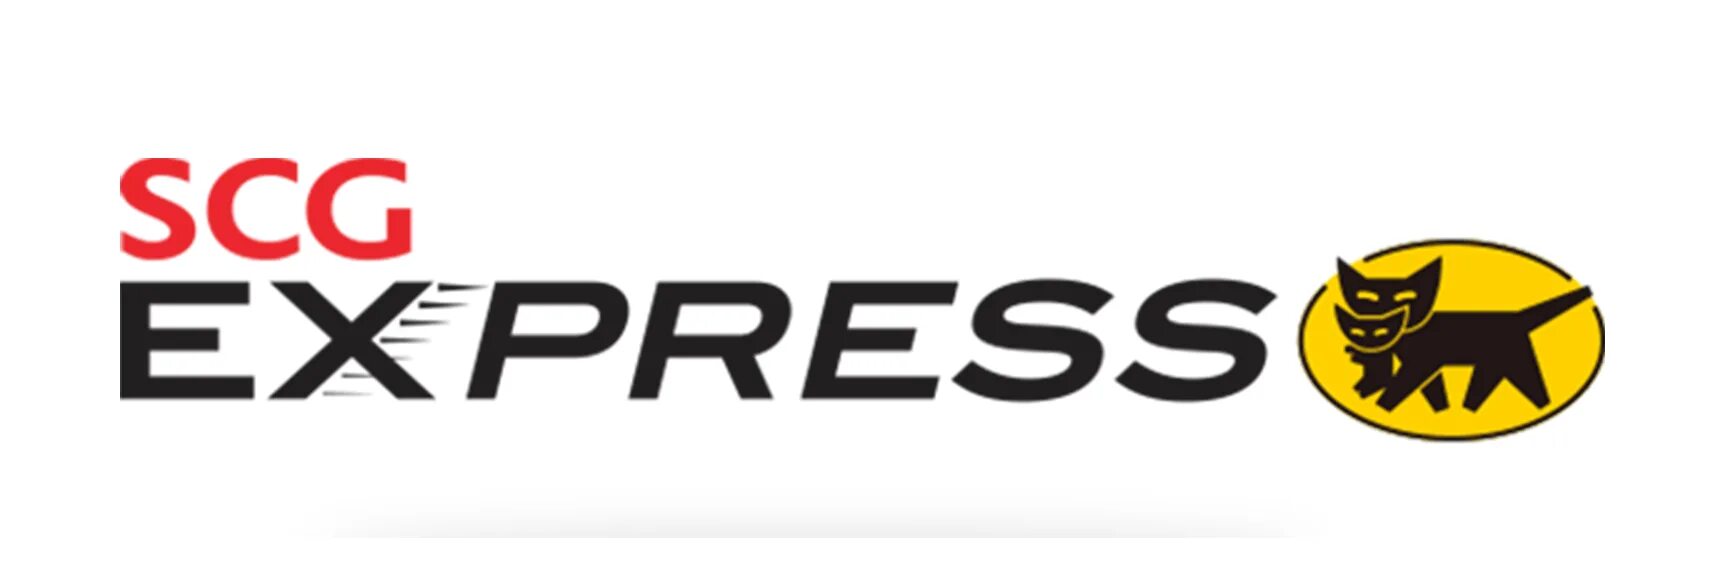 Express. Экспресс деталь логотип. SCG компания. Рэд экспресс логотип.